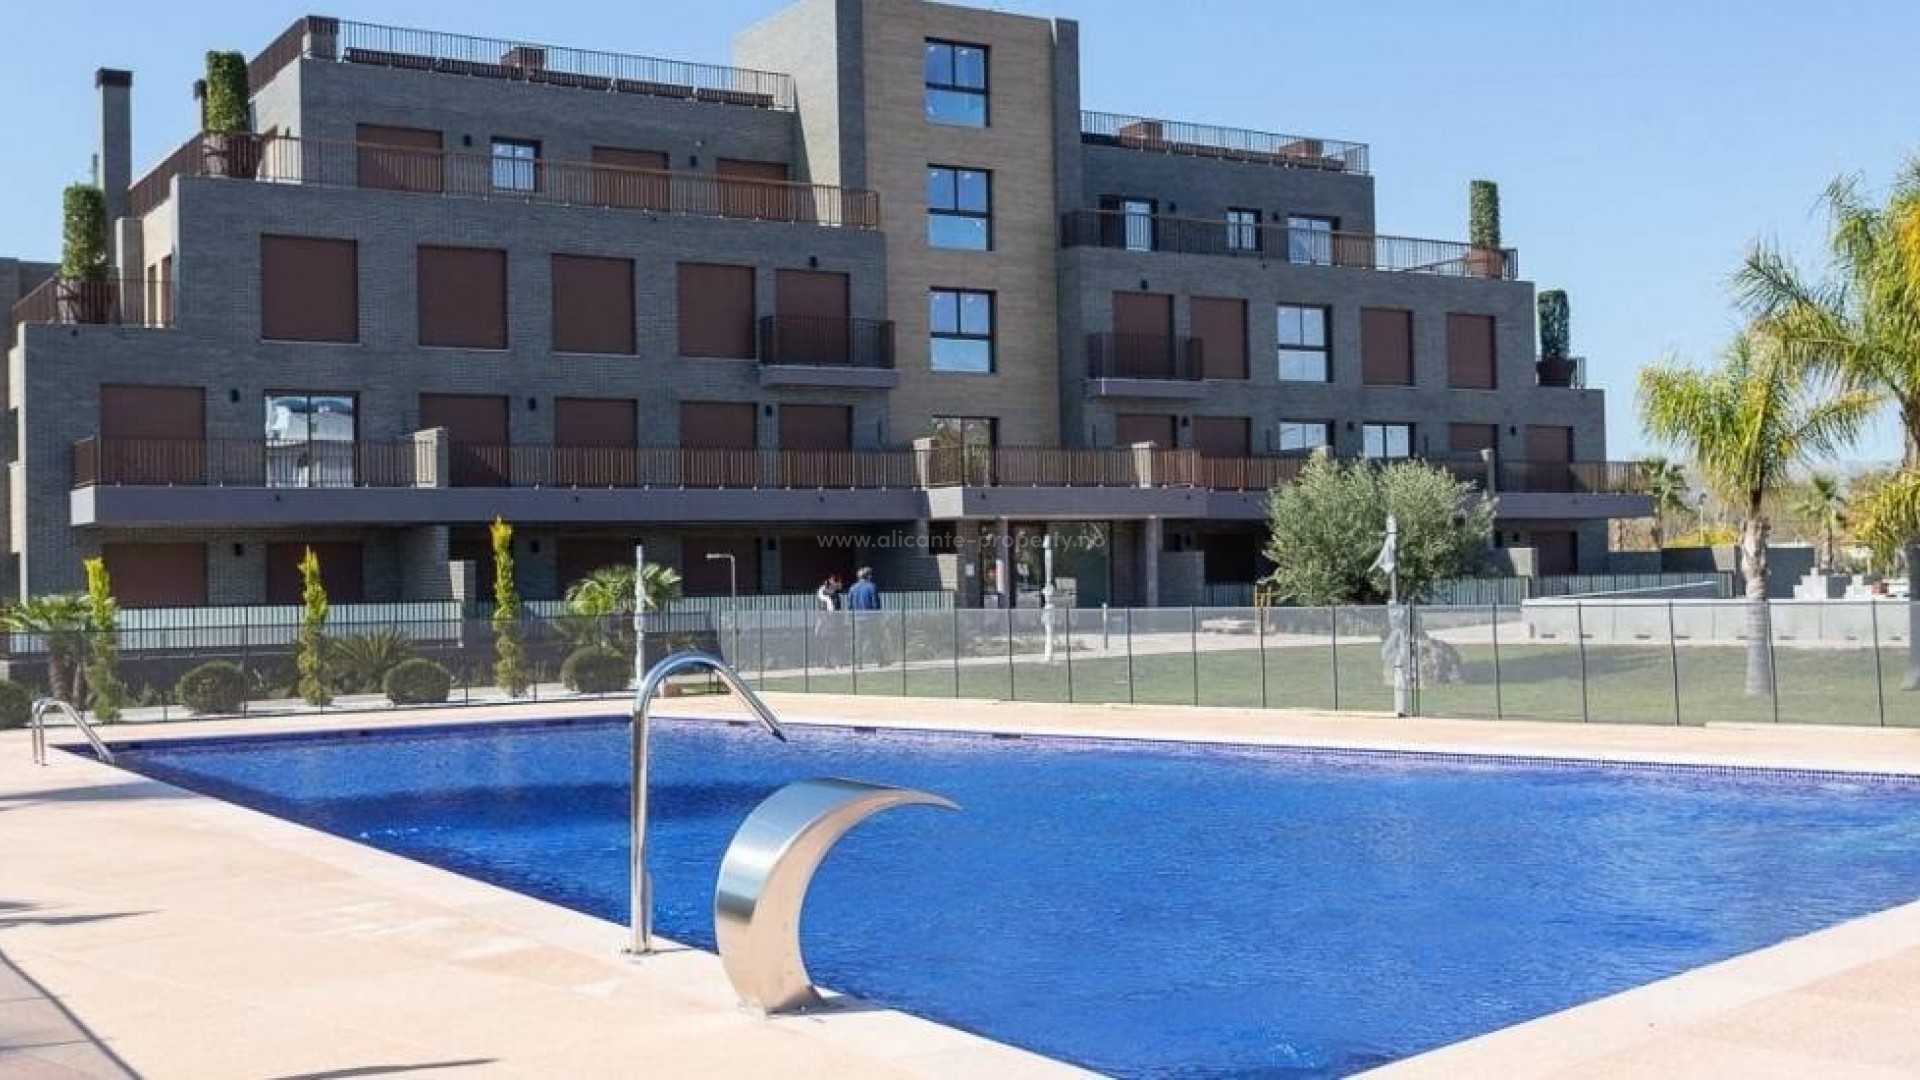 Mindre leiligheter i Denia 400m nær strand, 1 til 3 roms, fra 93.700 Euro, bassenget. Flott naturskjønnhet og med flotte fritids- og sportsattraksjoner.